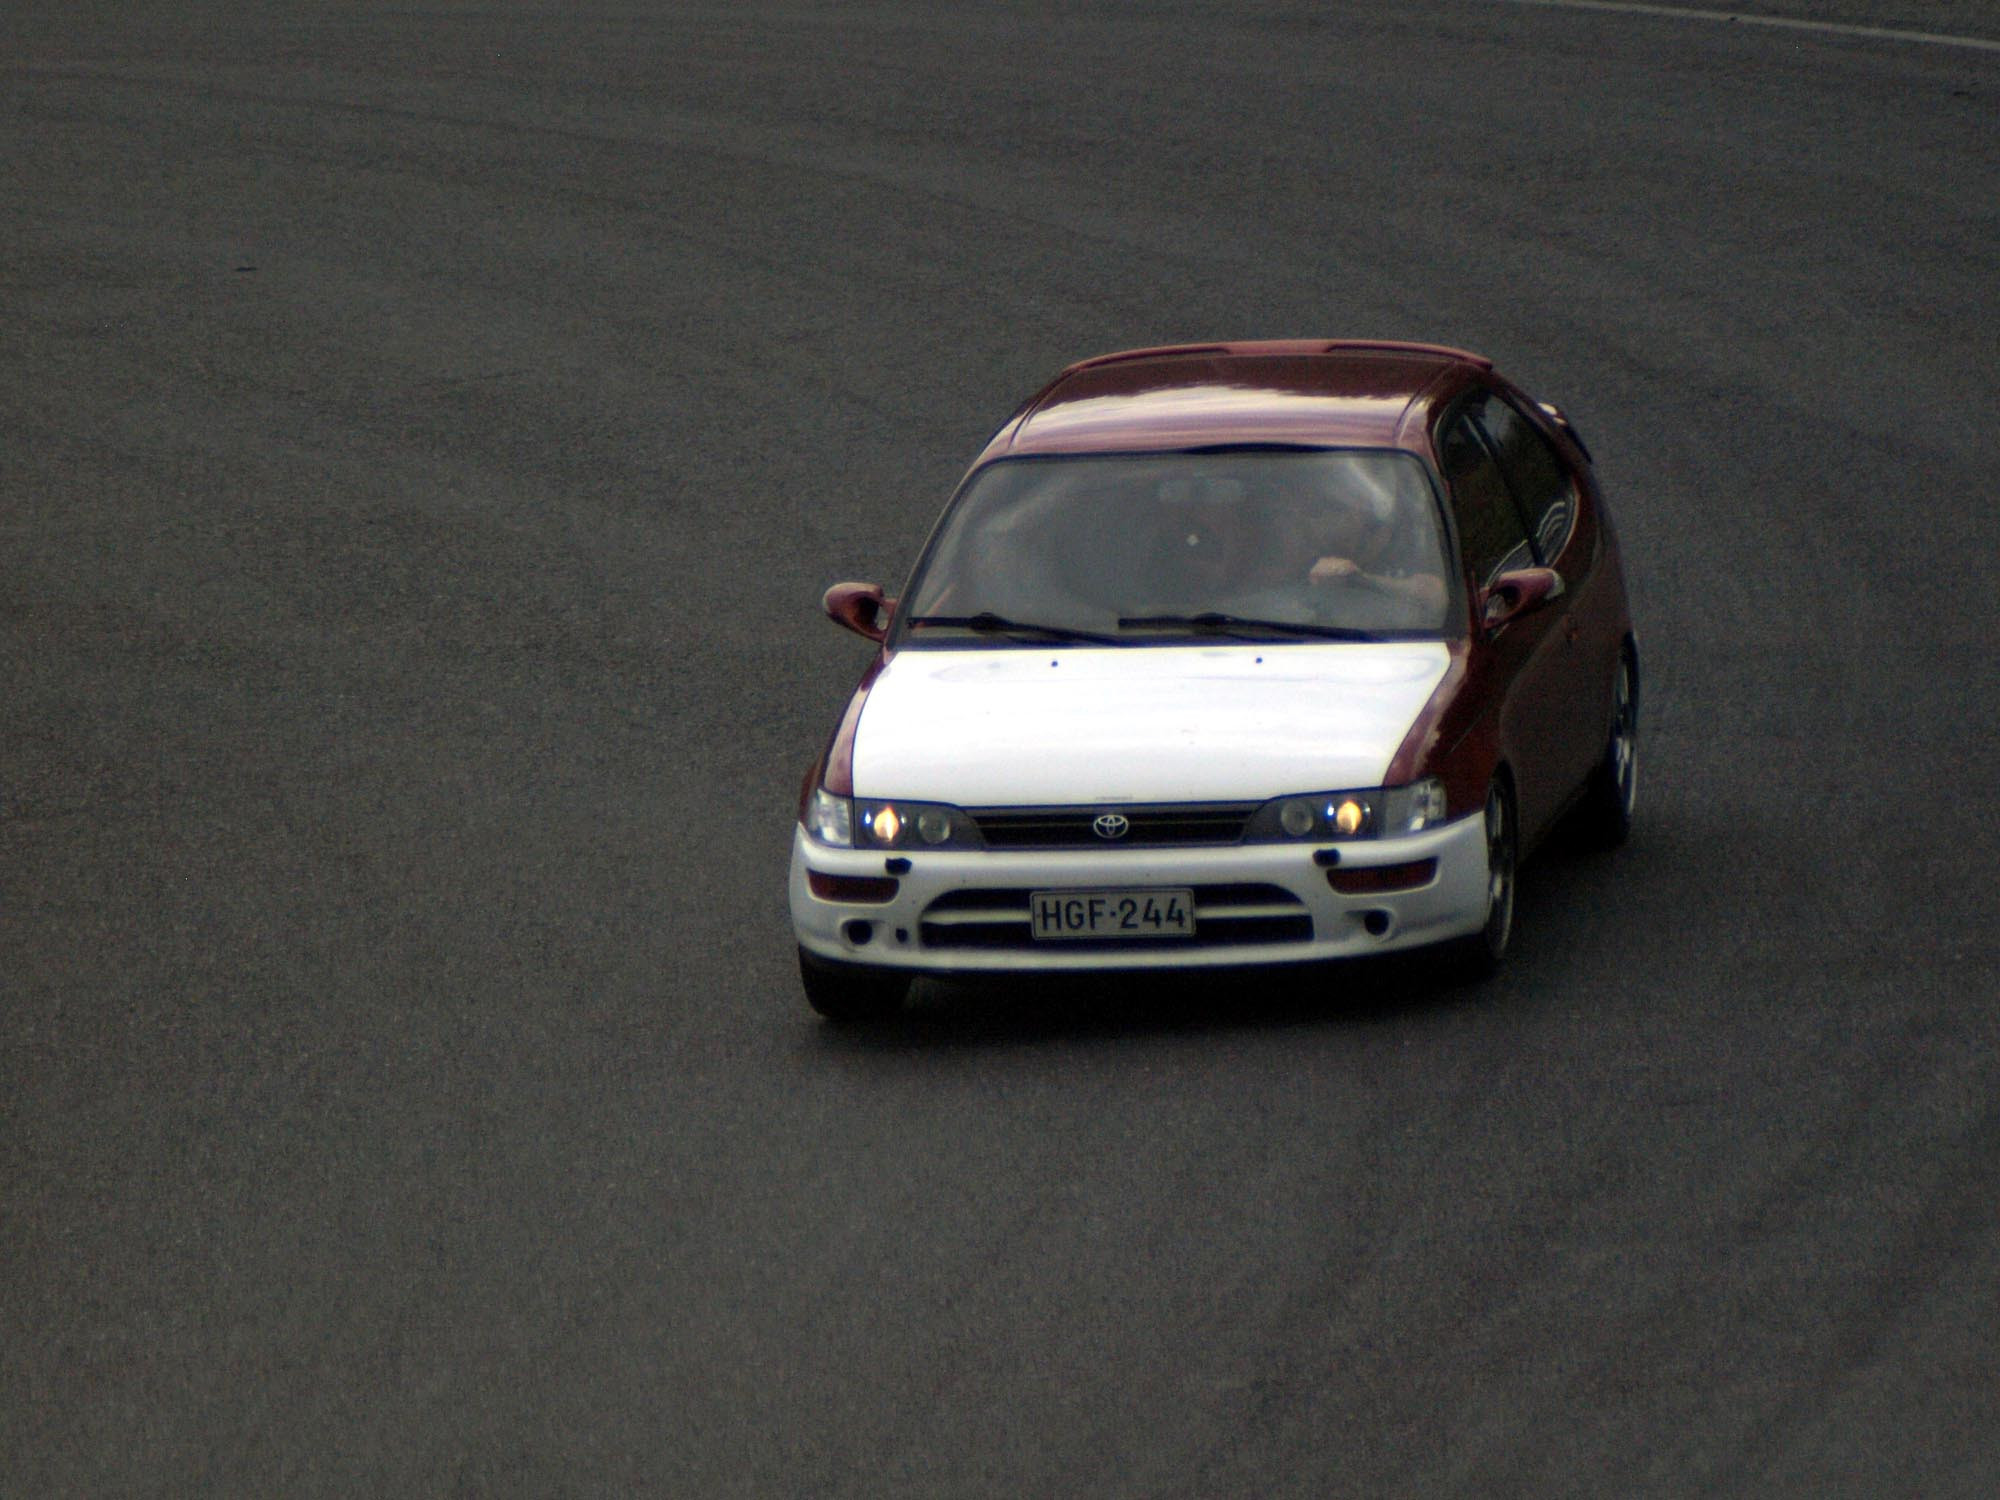 Fintoys ratapÃ¤ivÃ¤ 19.7.2014 Ahveniston moottorirata, Toyota Corolla